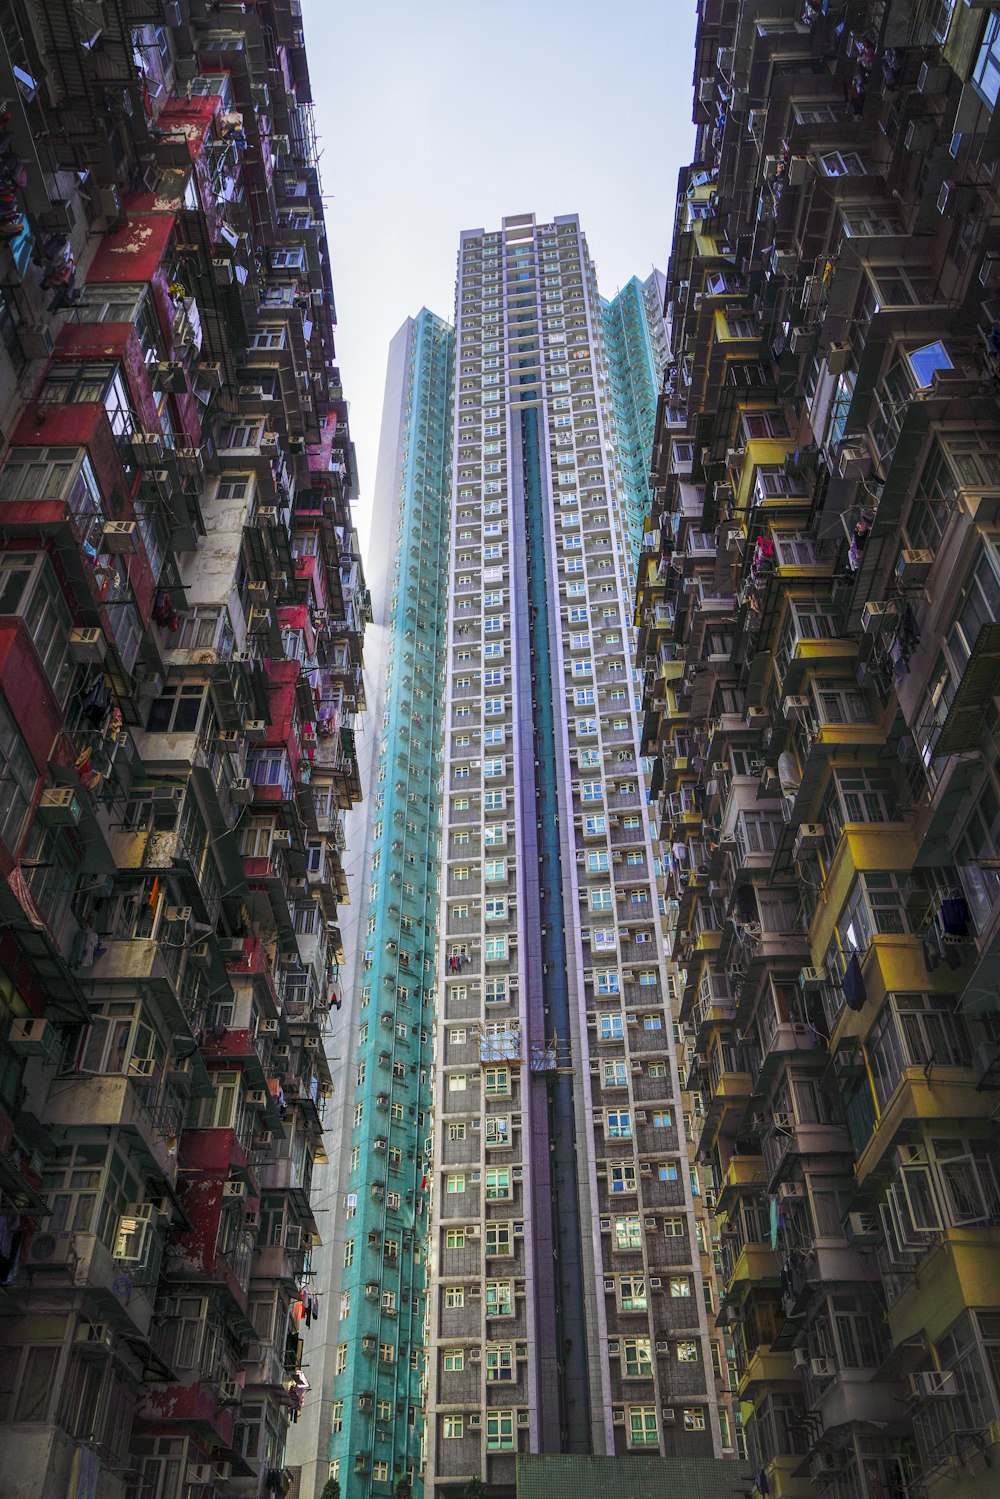 Photographie en contre-plongée d’immeubles de grande hauteur